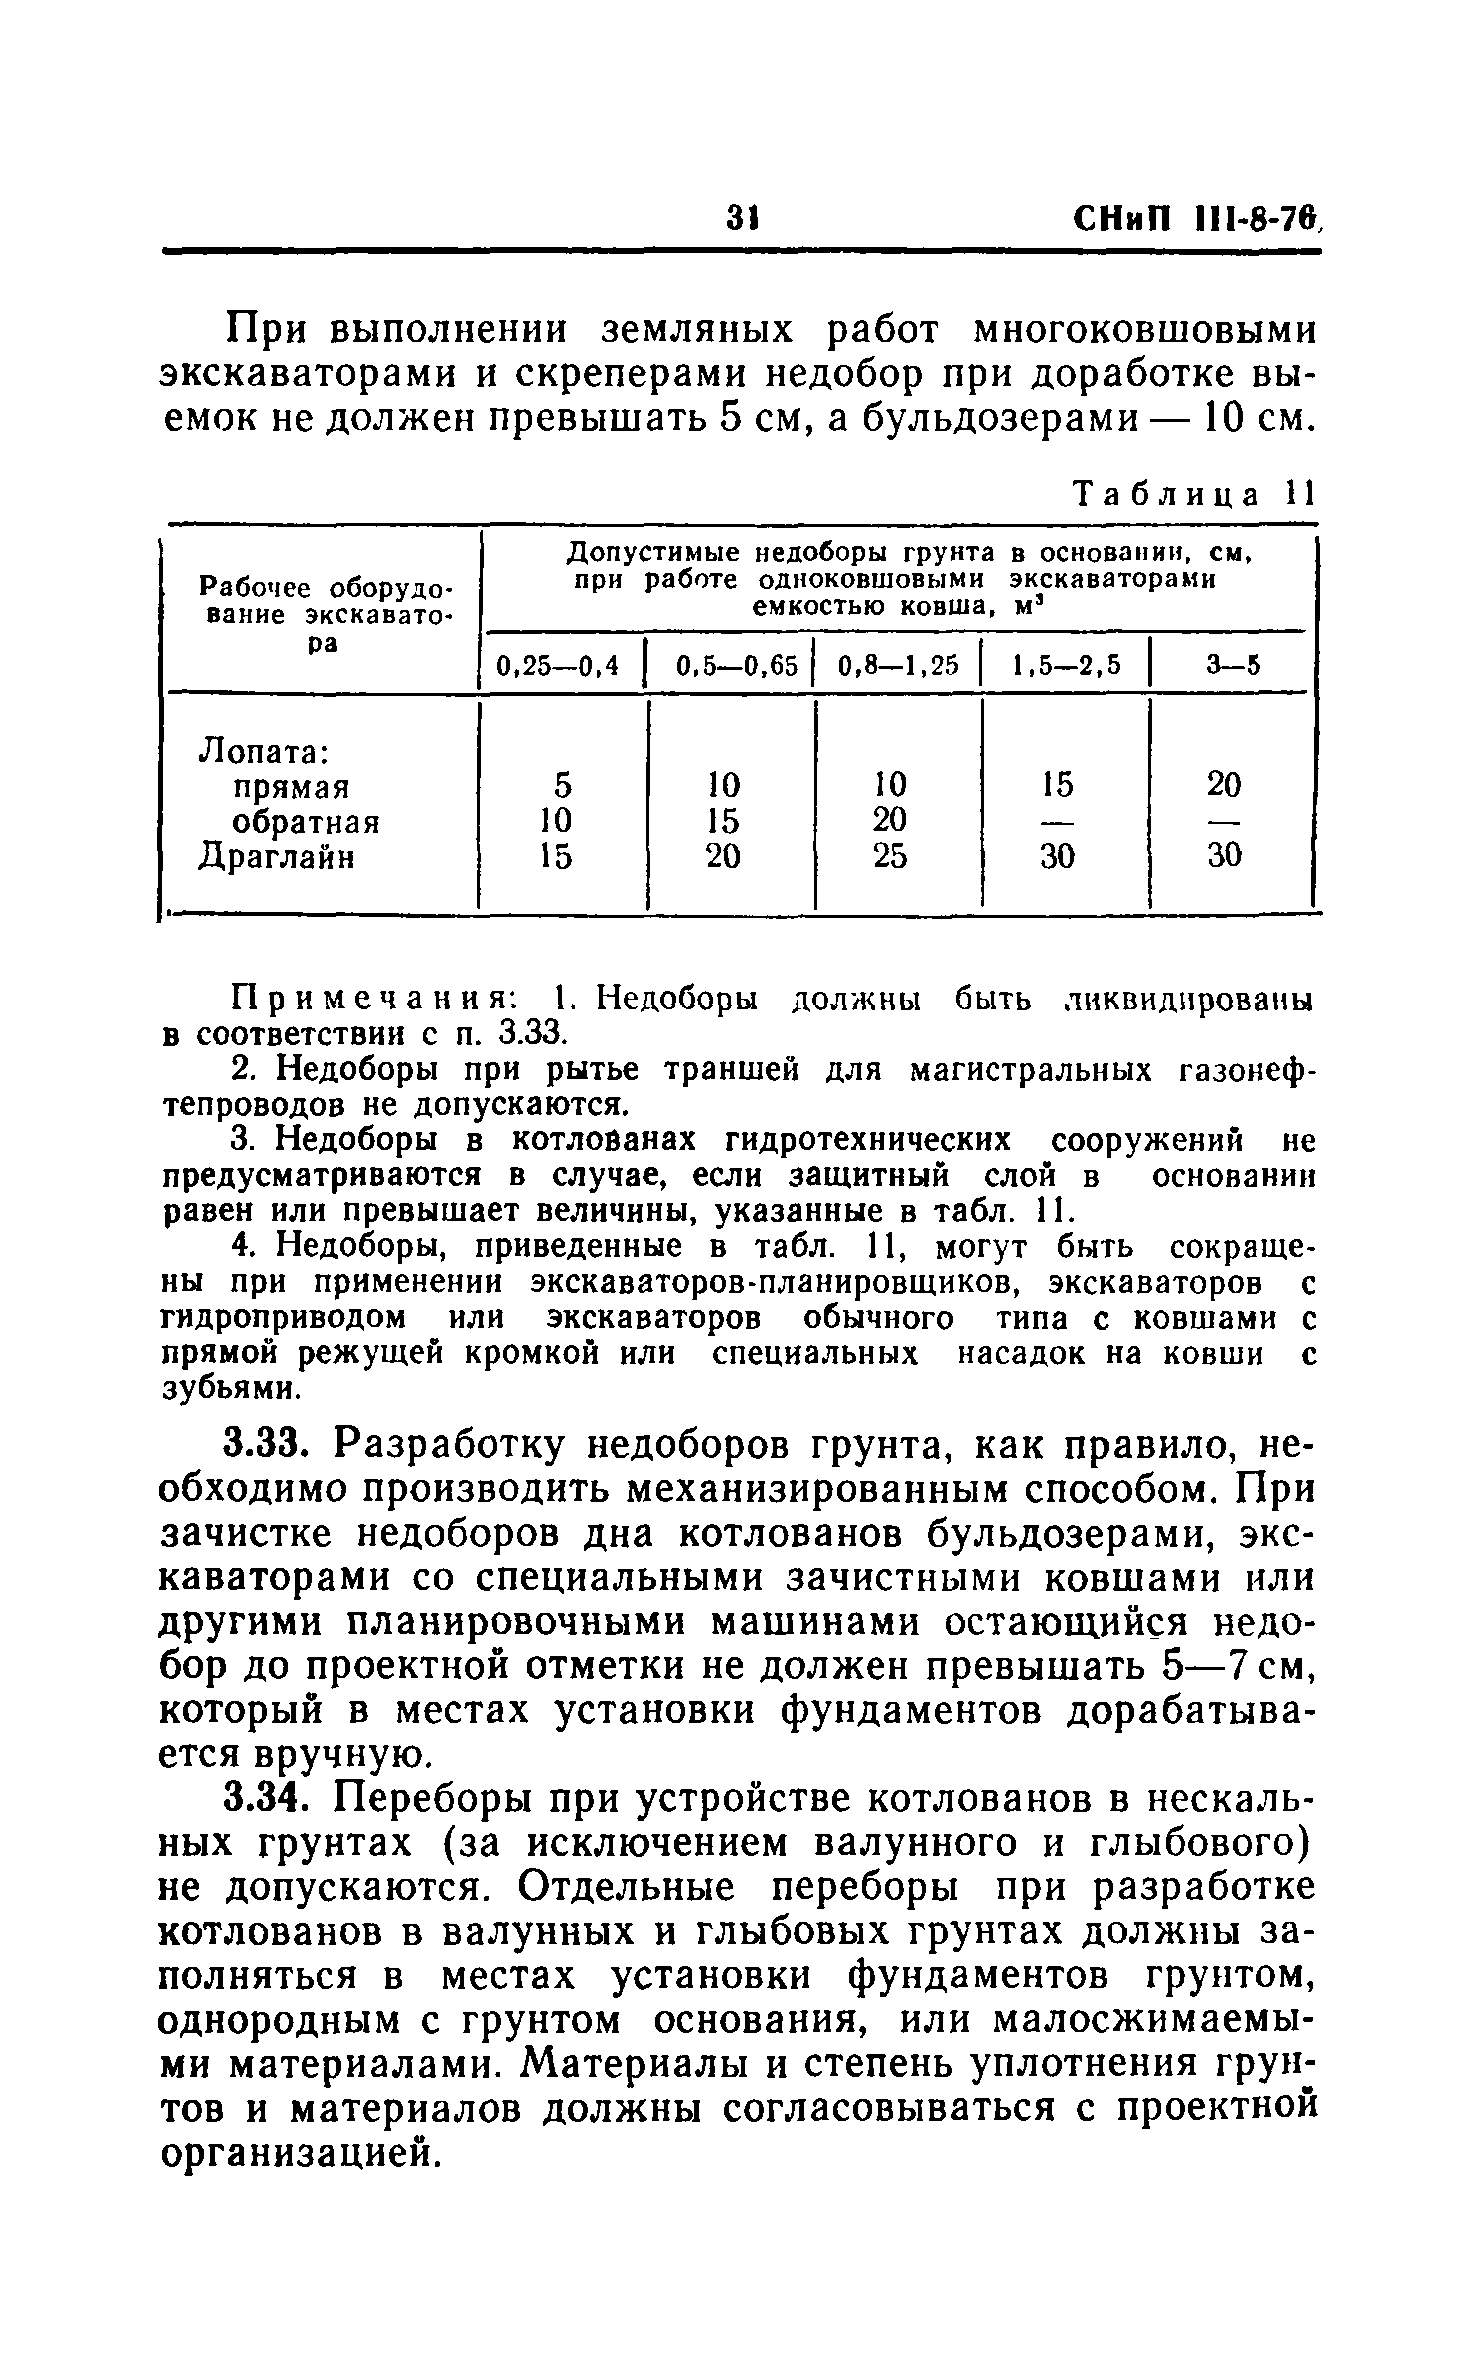 СНиП III-8-76